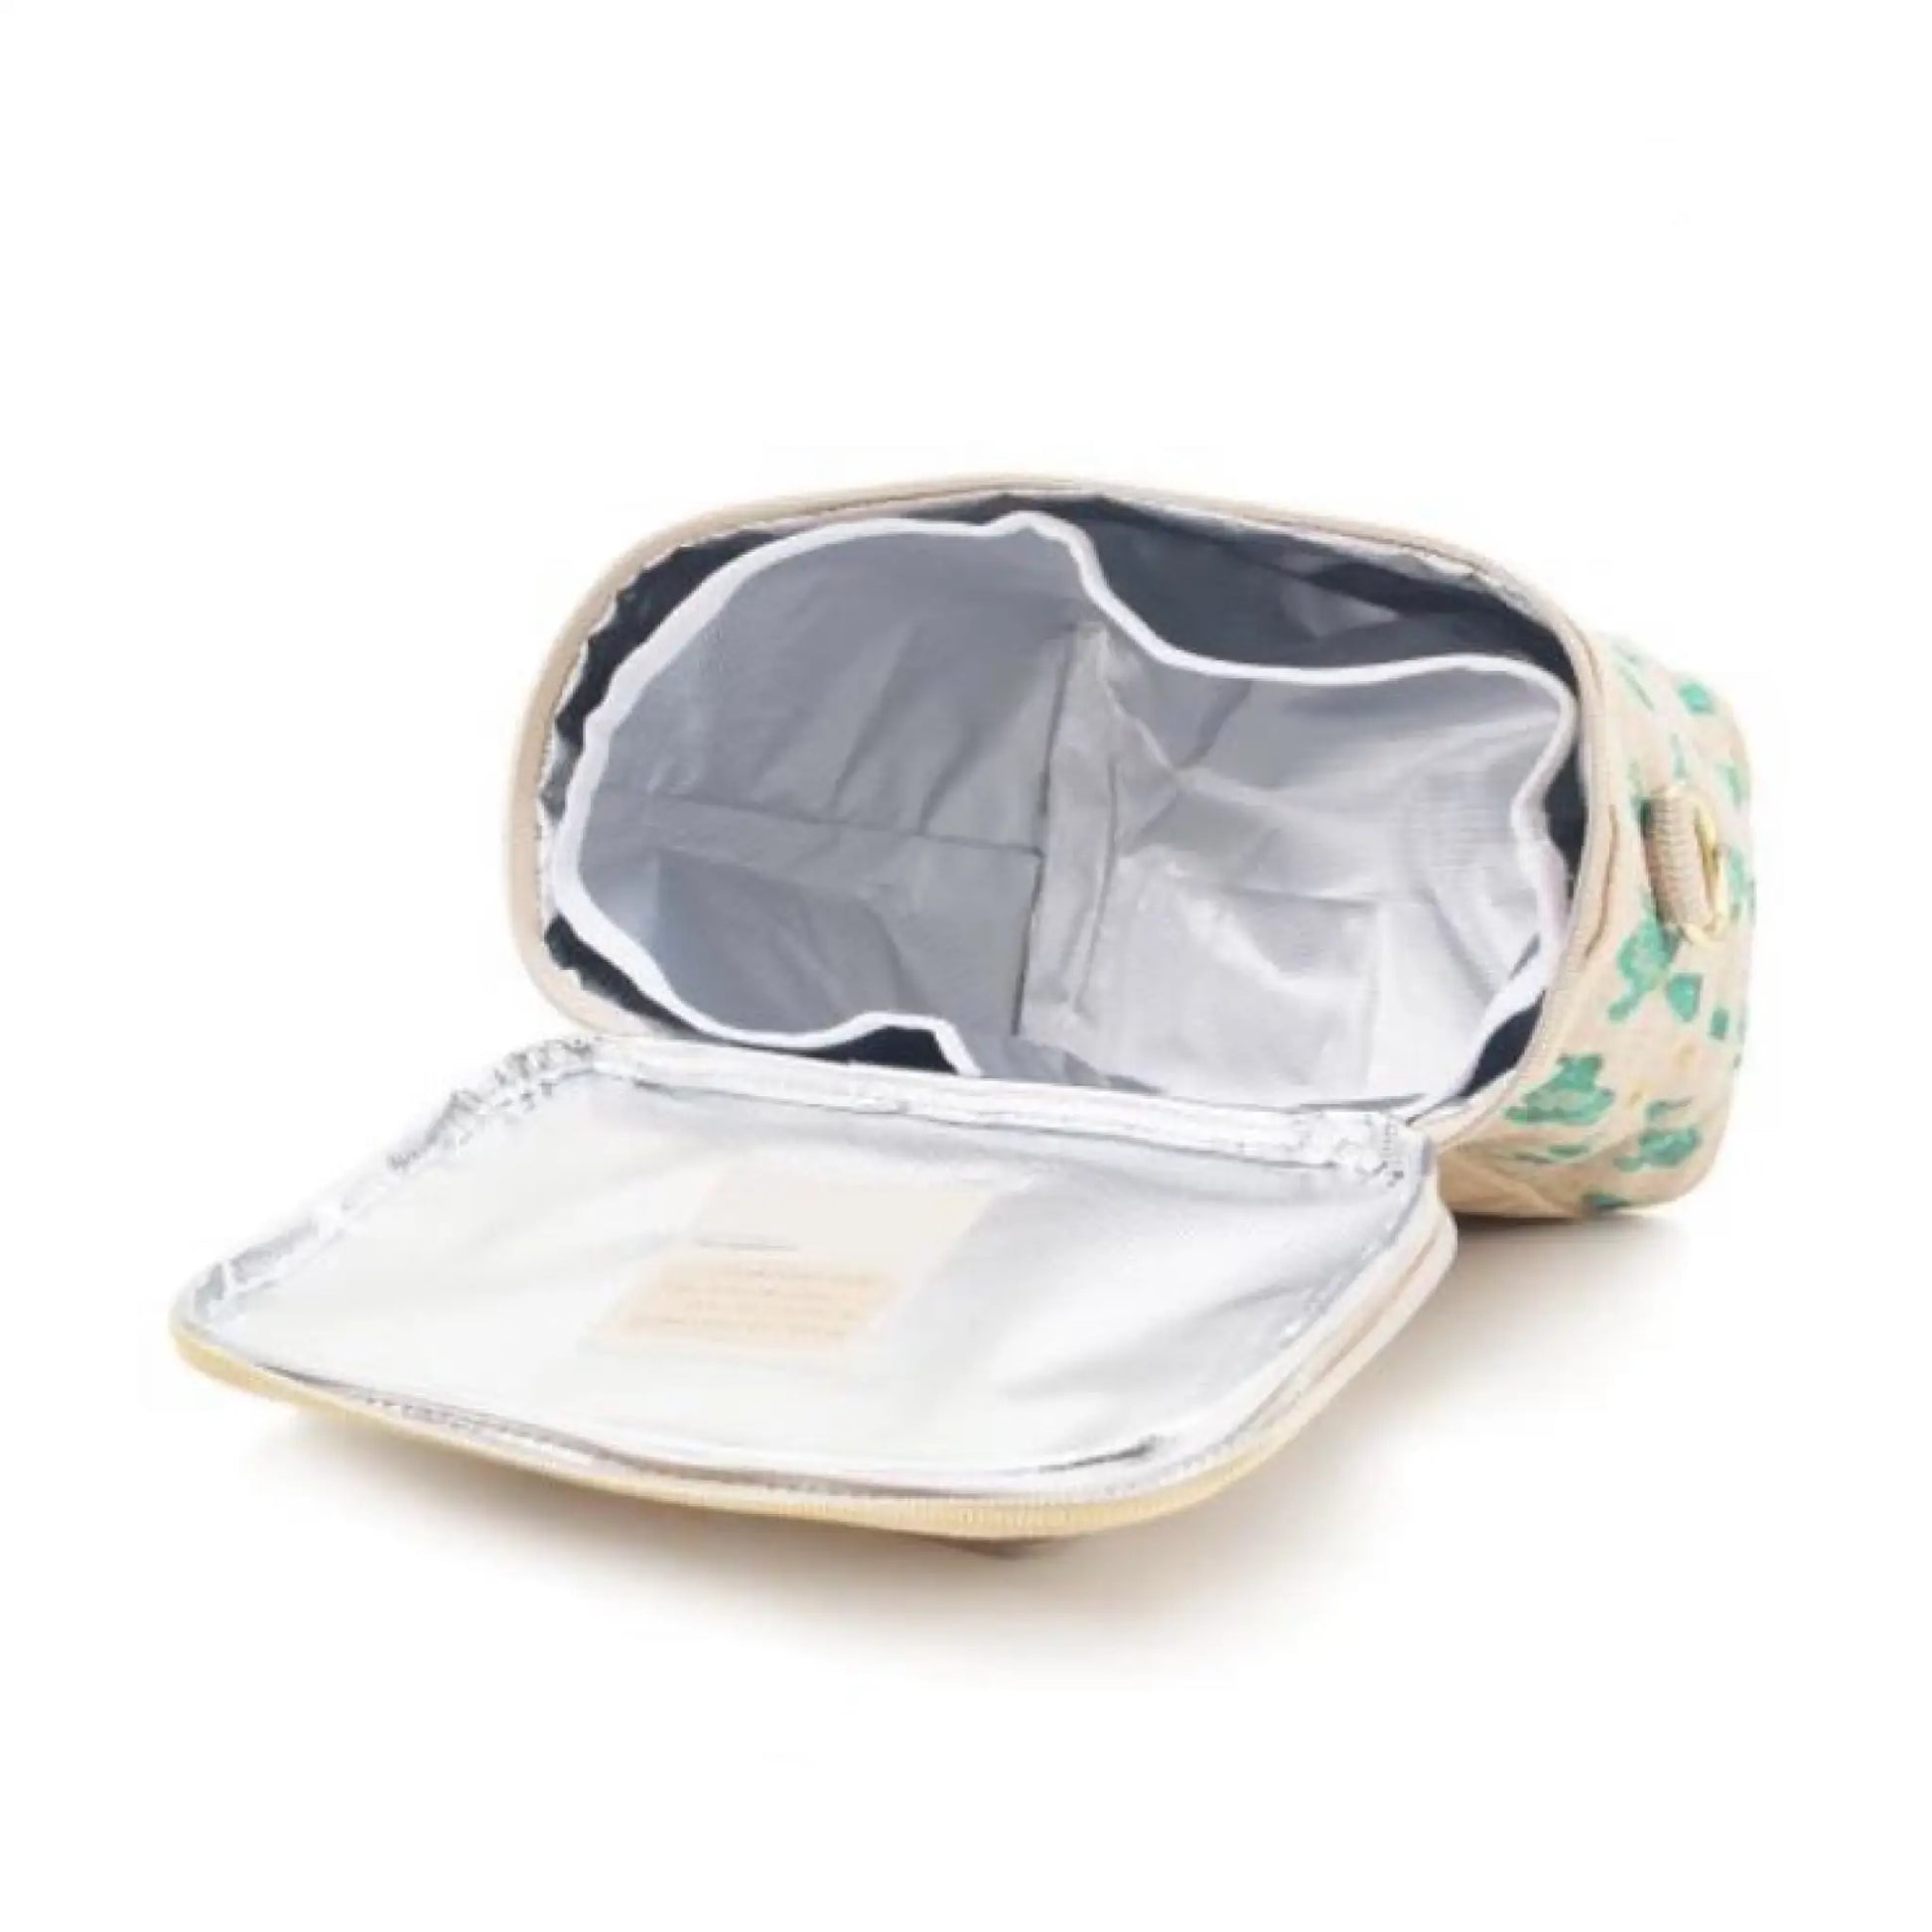 Lunchbox and Lunchbag - large cooler bag - Bag